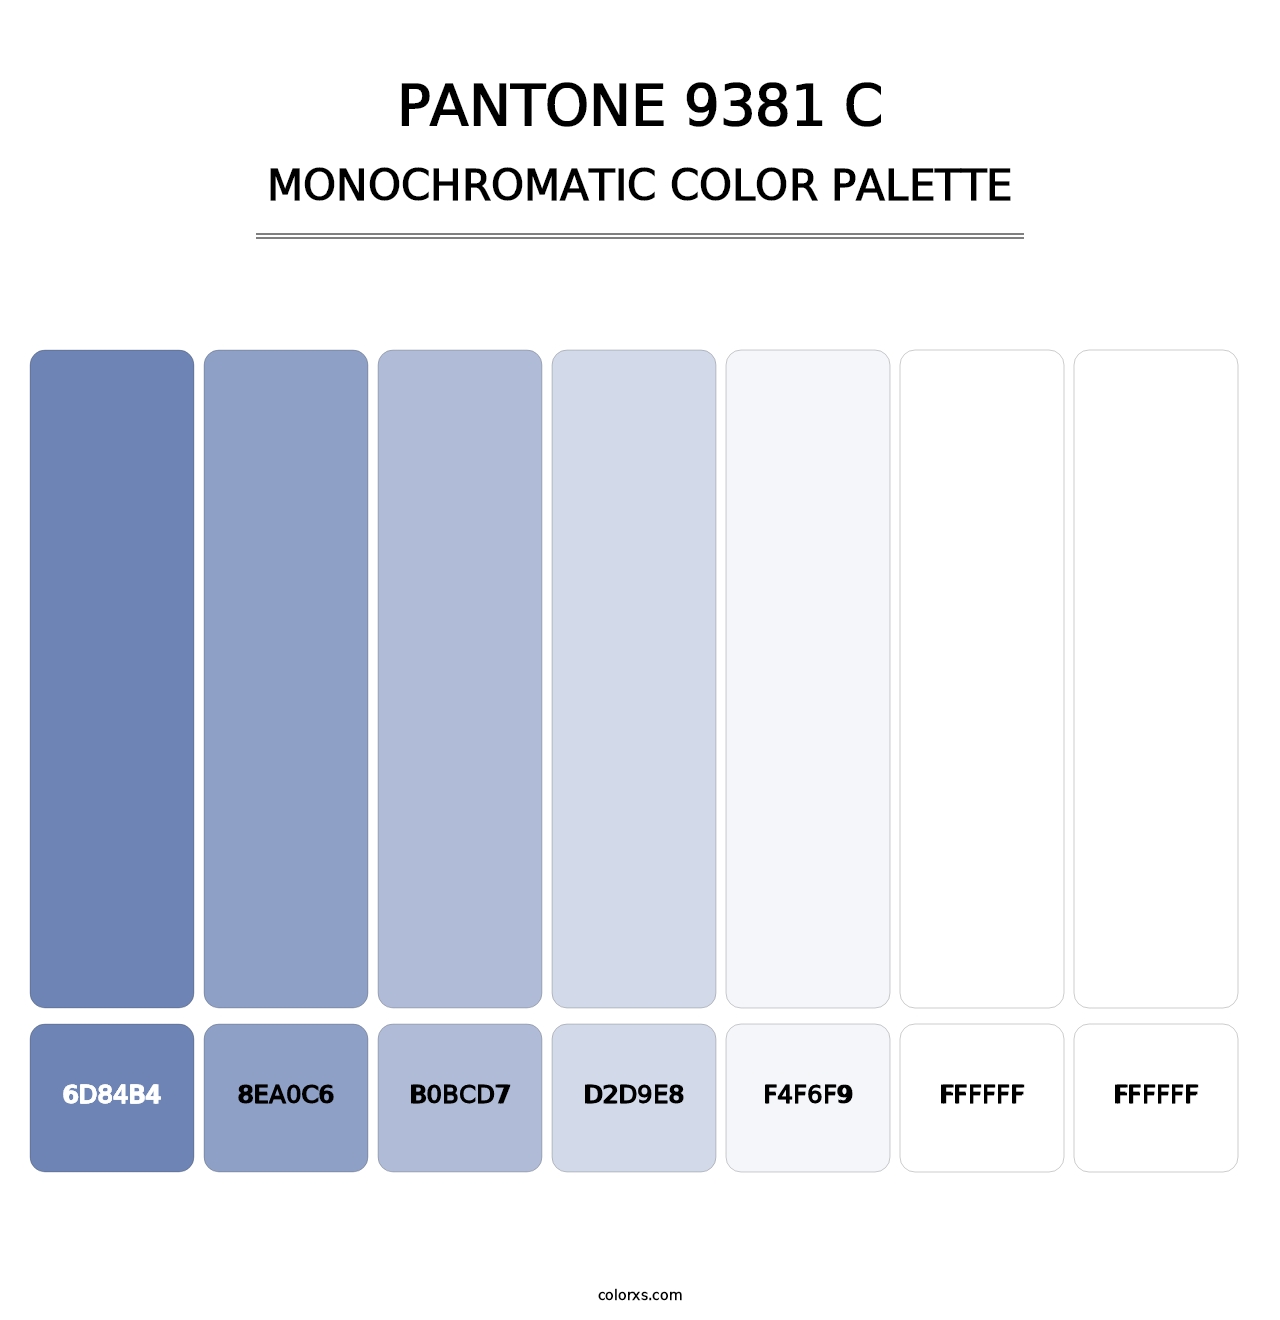 PANTONE 9381 C - Monochromatic Color Palette